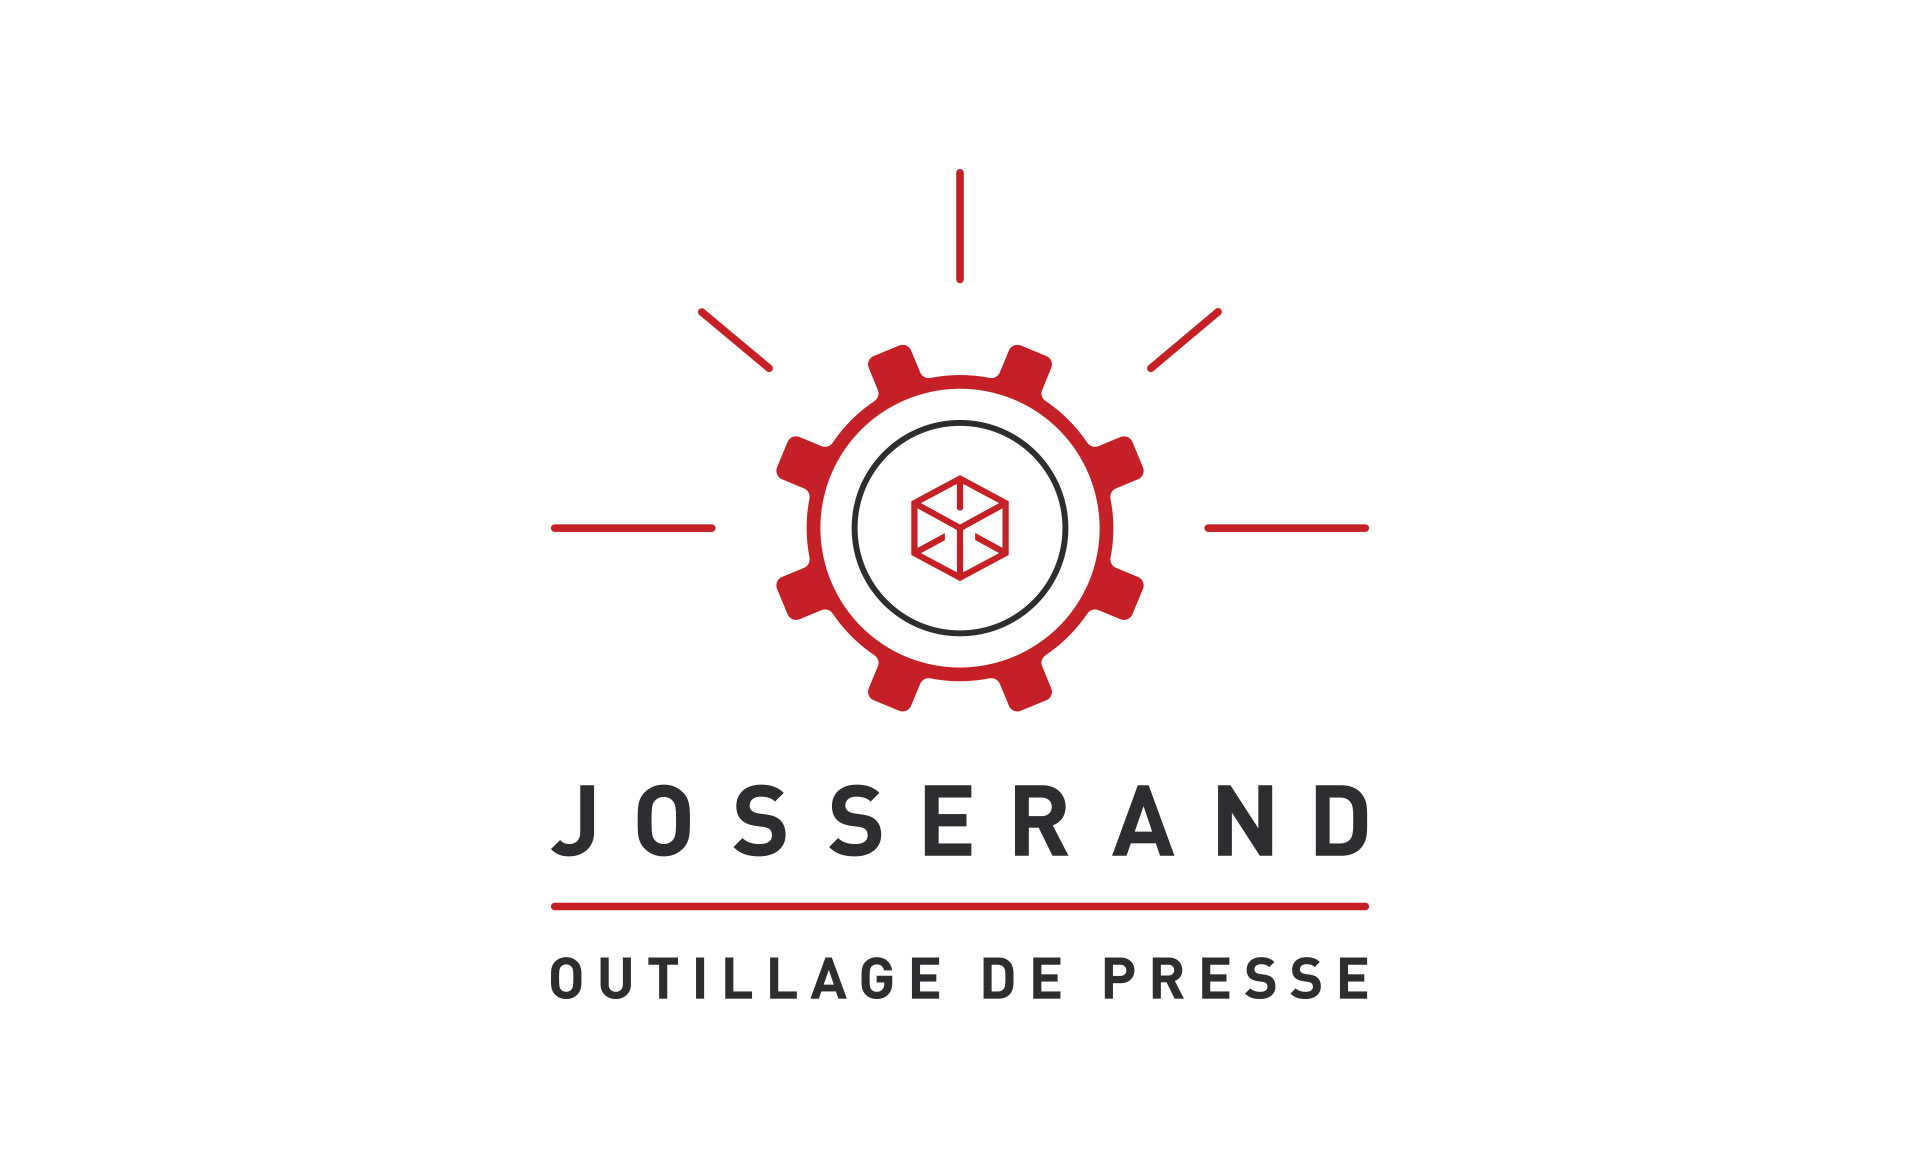 Société Josserand, Jean-Charles GIEN, création de sites Internet à Mâcon (71) et Lyon (69)